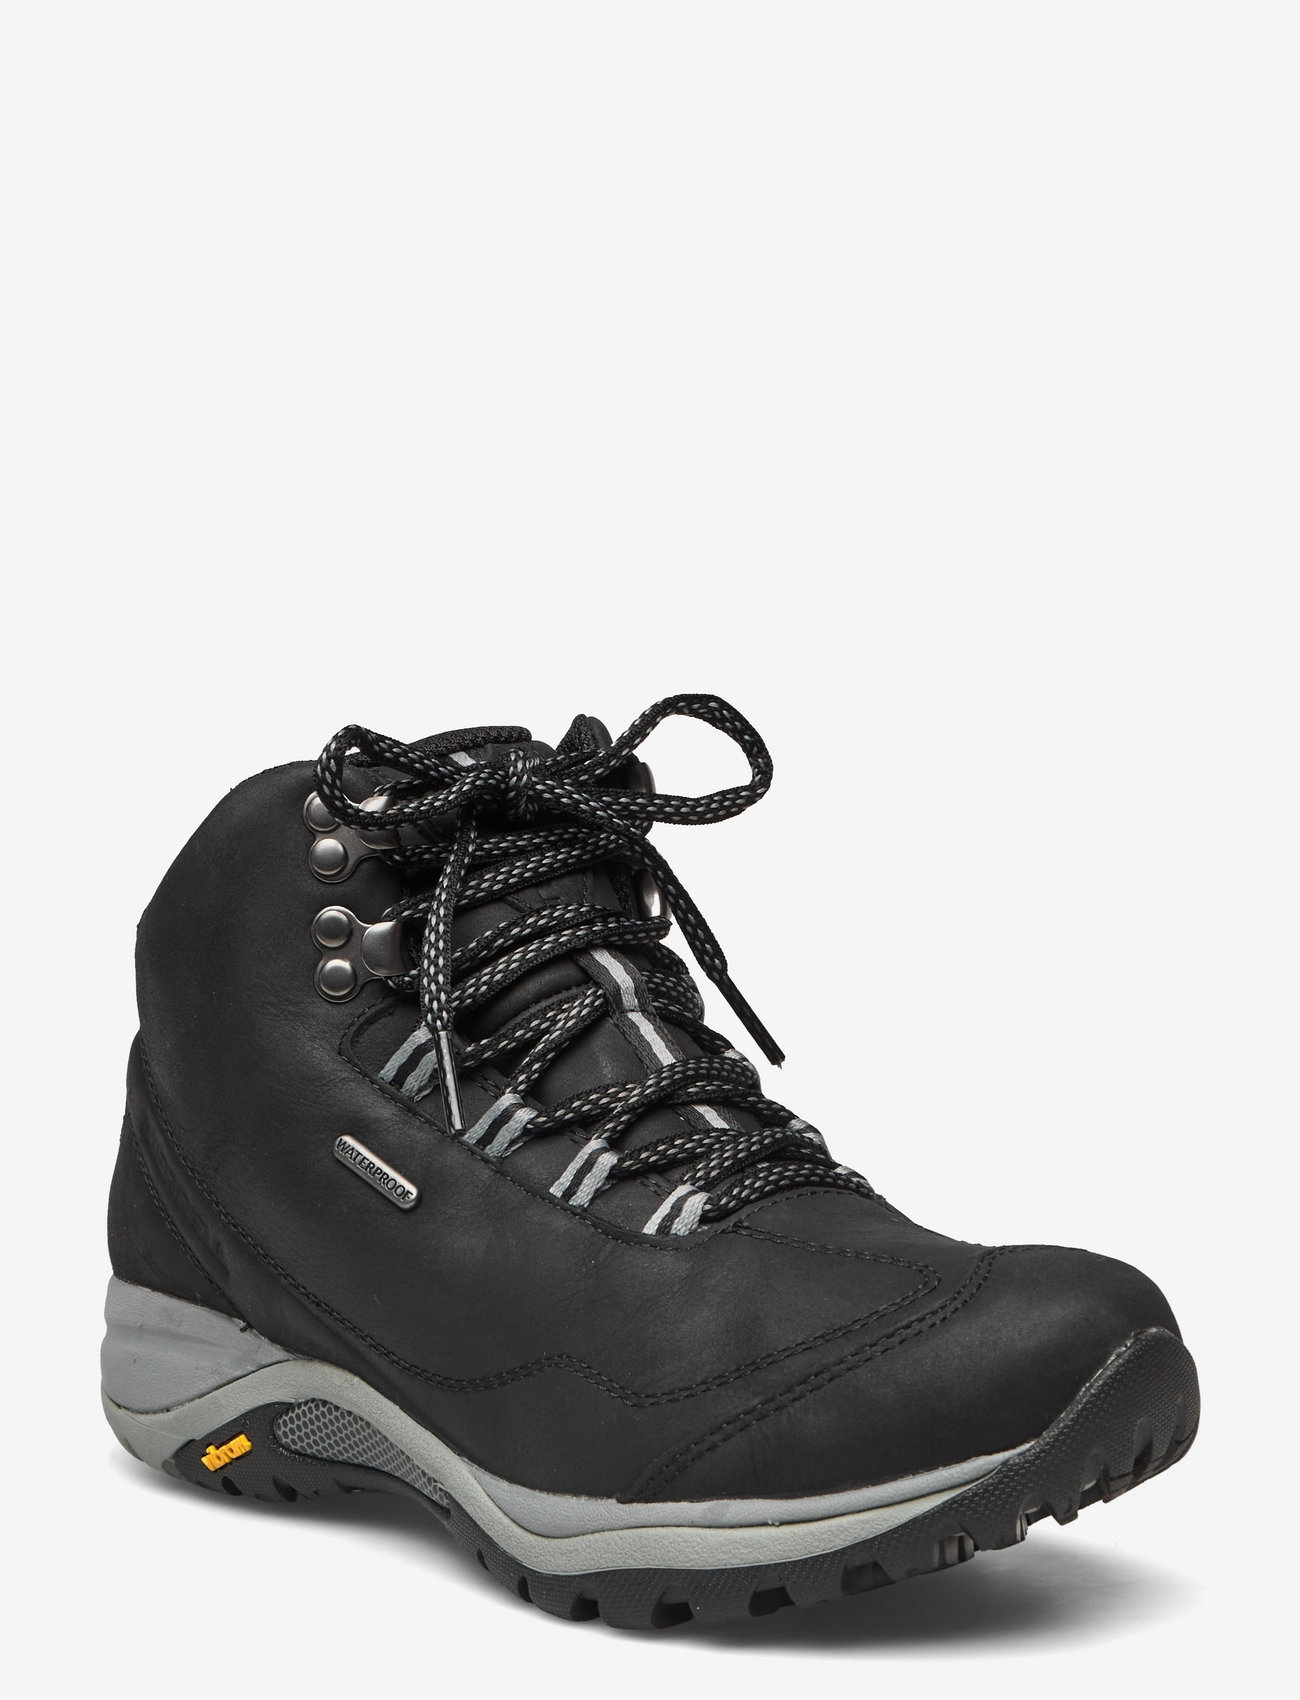 Merrell - Women's Siren Traveller 3 Mid WP - Black/Monument - hiking shoes - black/monument - 0